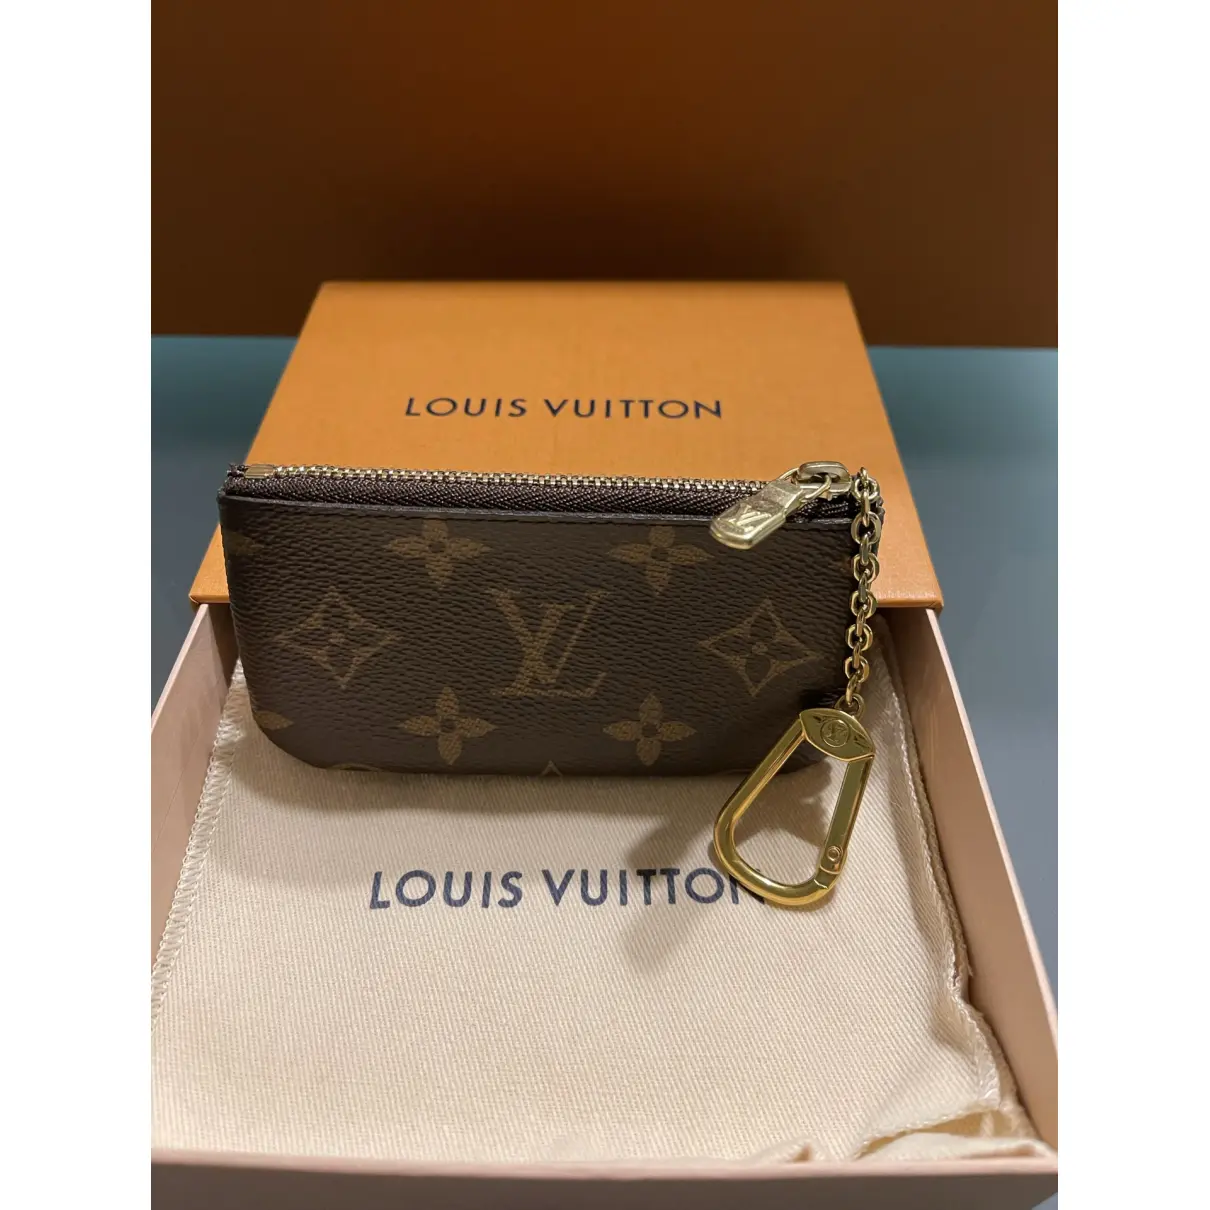 Buy Louis Vuitton Cloth purse online